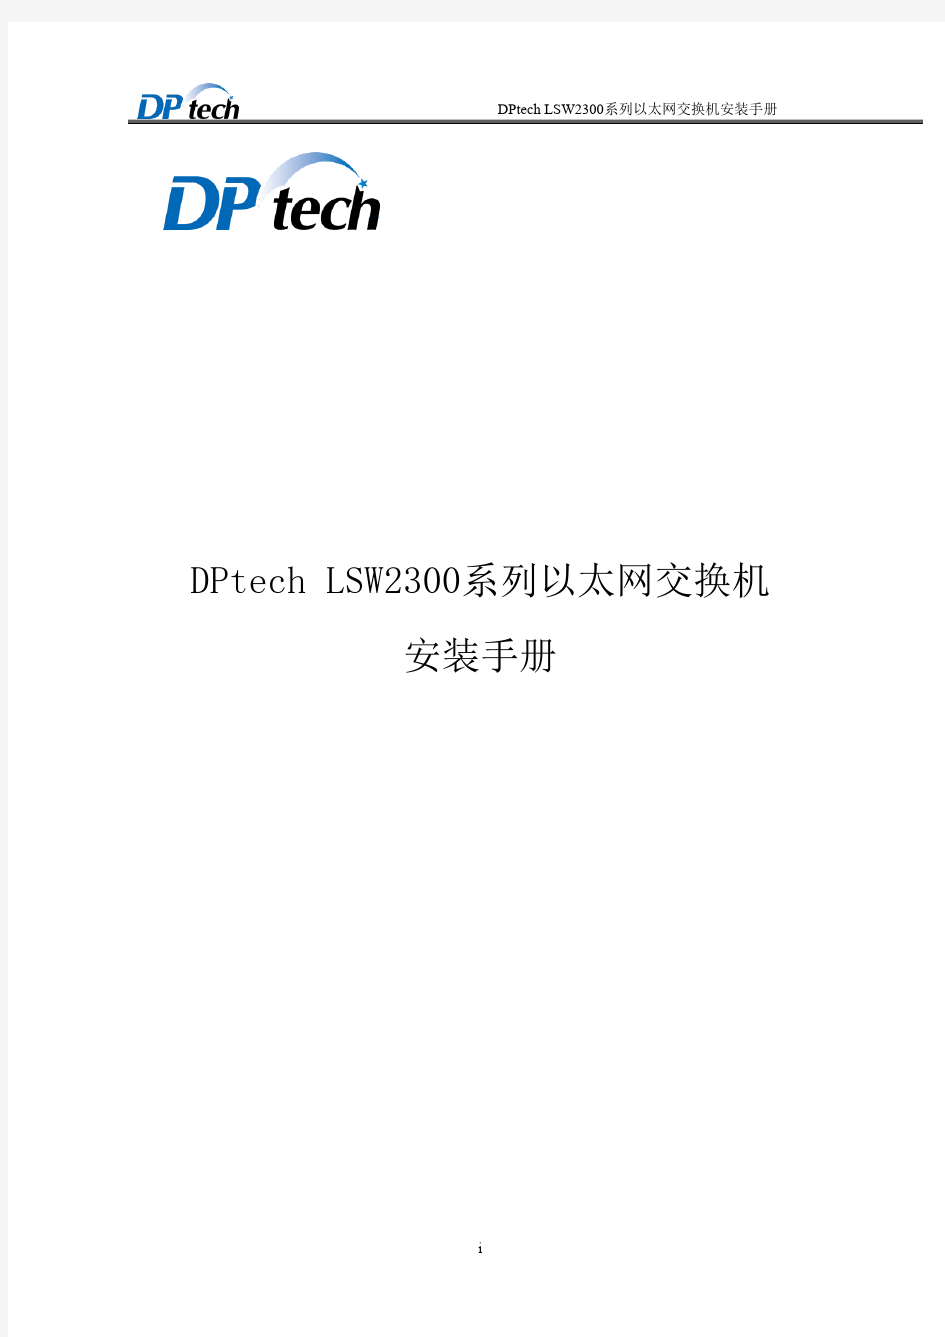 DPtech LSW2300系列以太网交换机安装手册v1.2